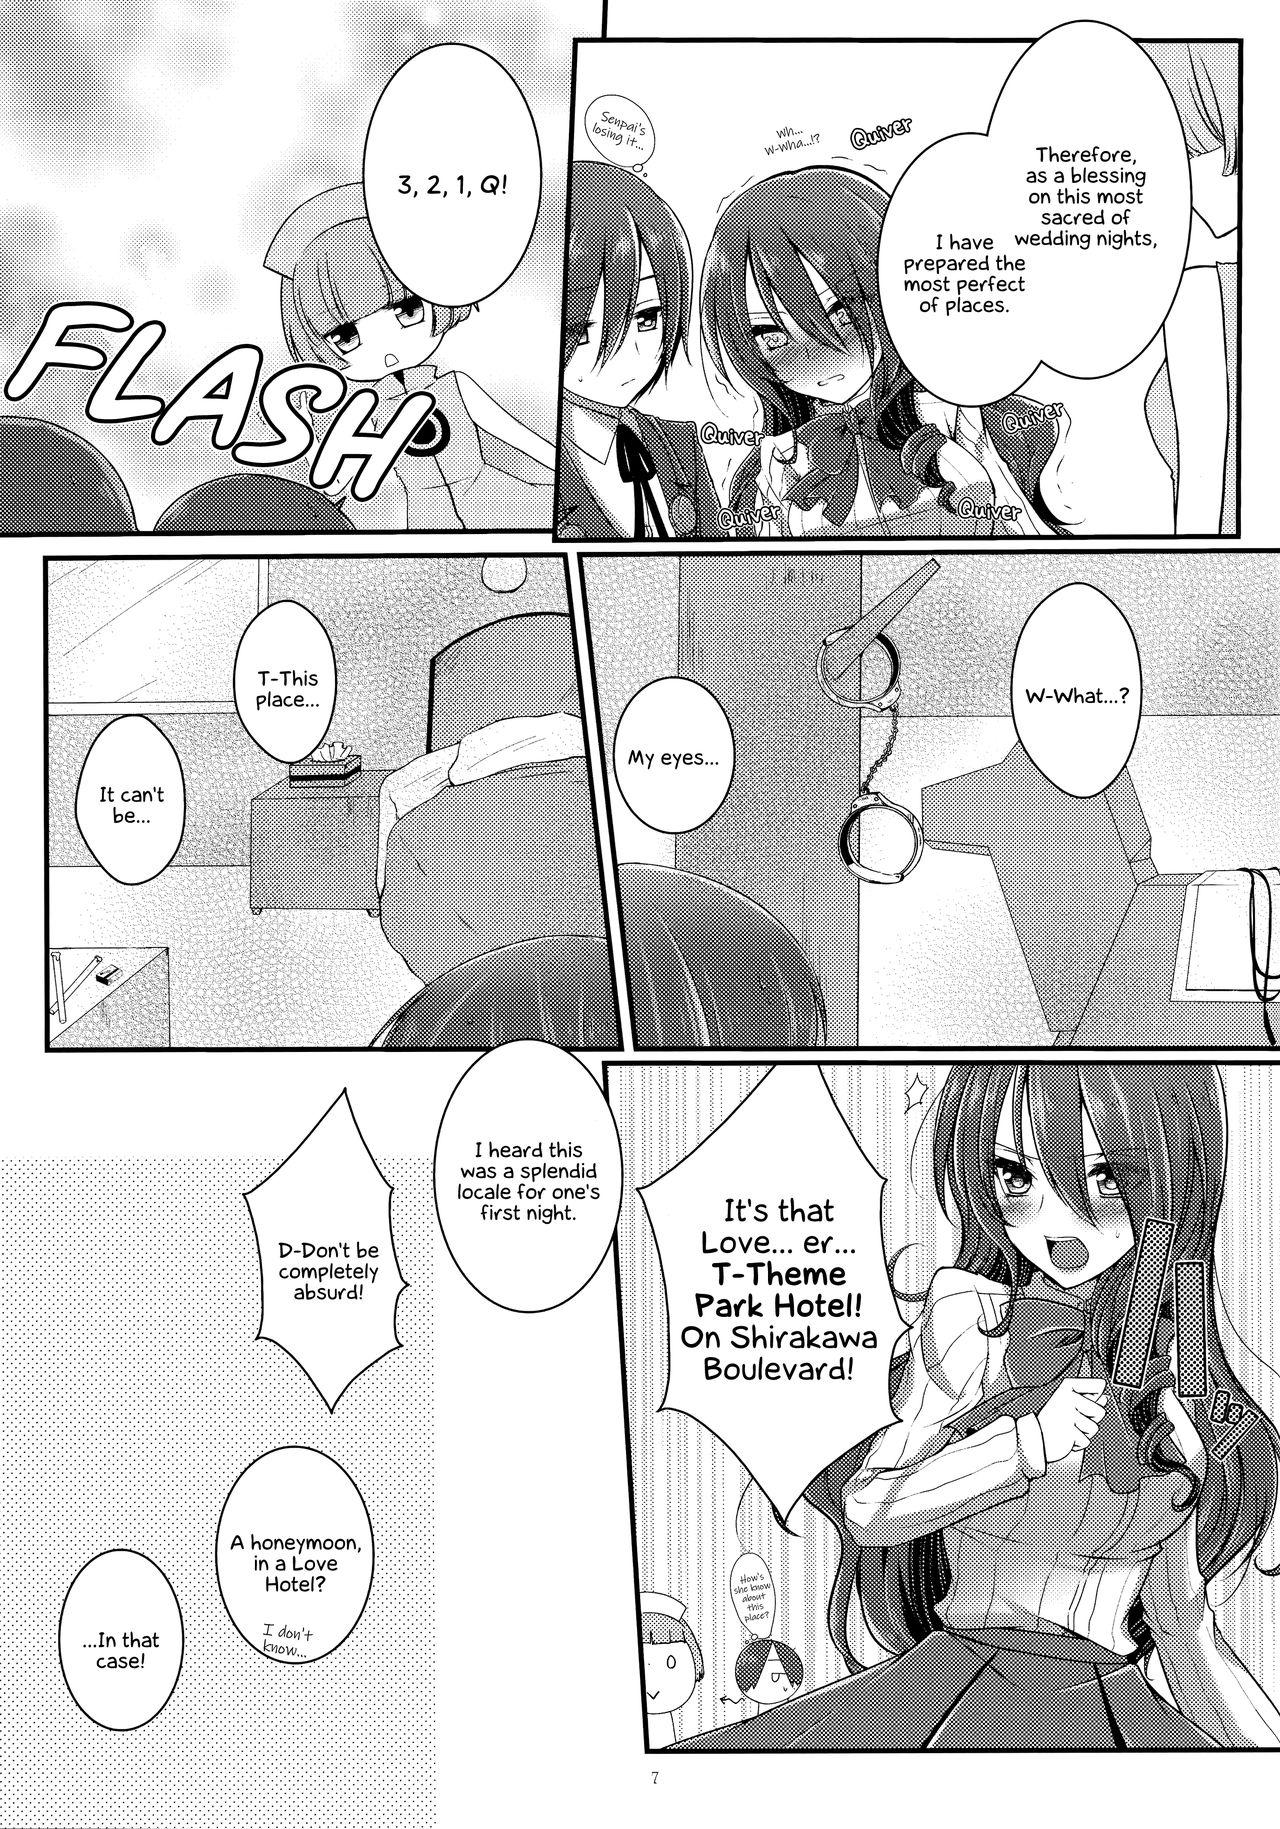 Hot Mom Brilliant Marriage - Persona 3 Fudendo - Page 6